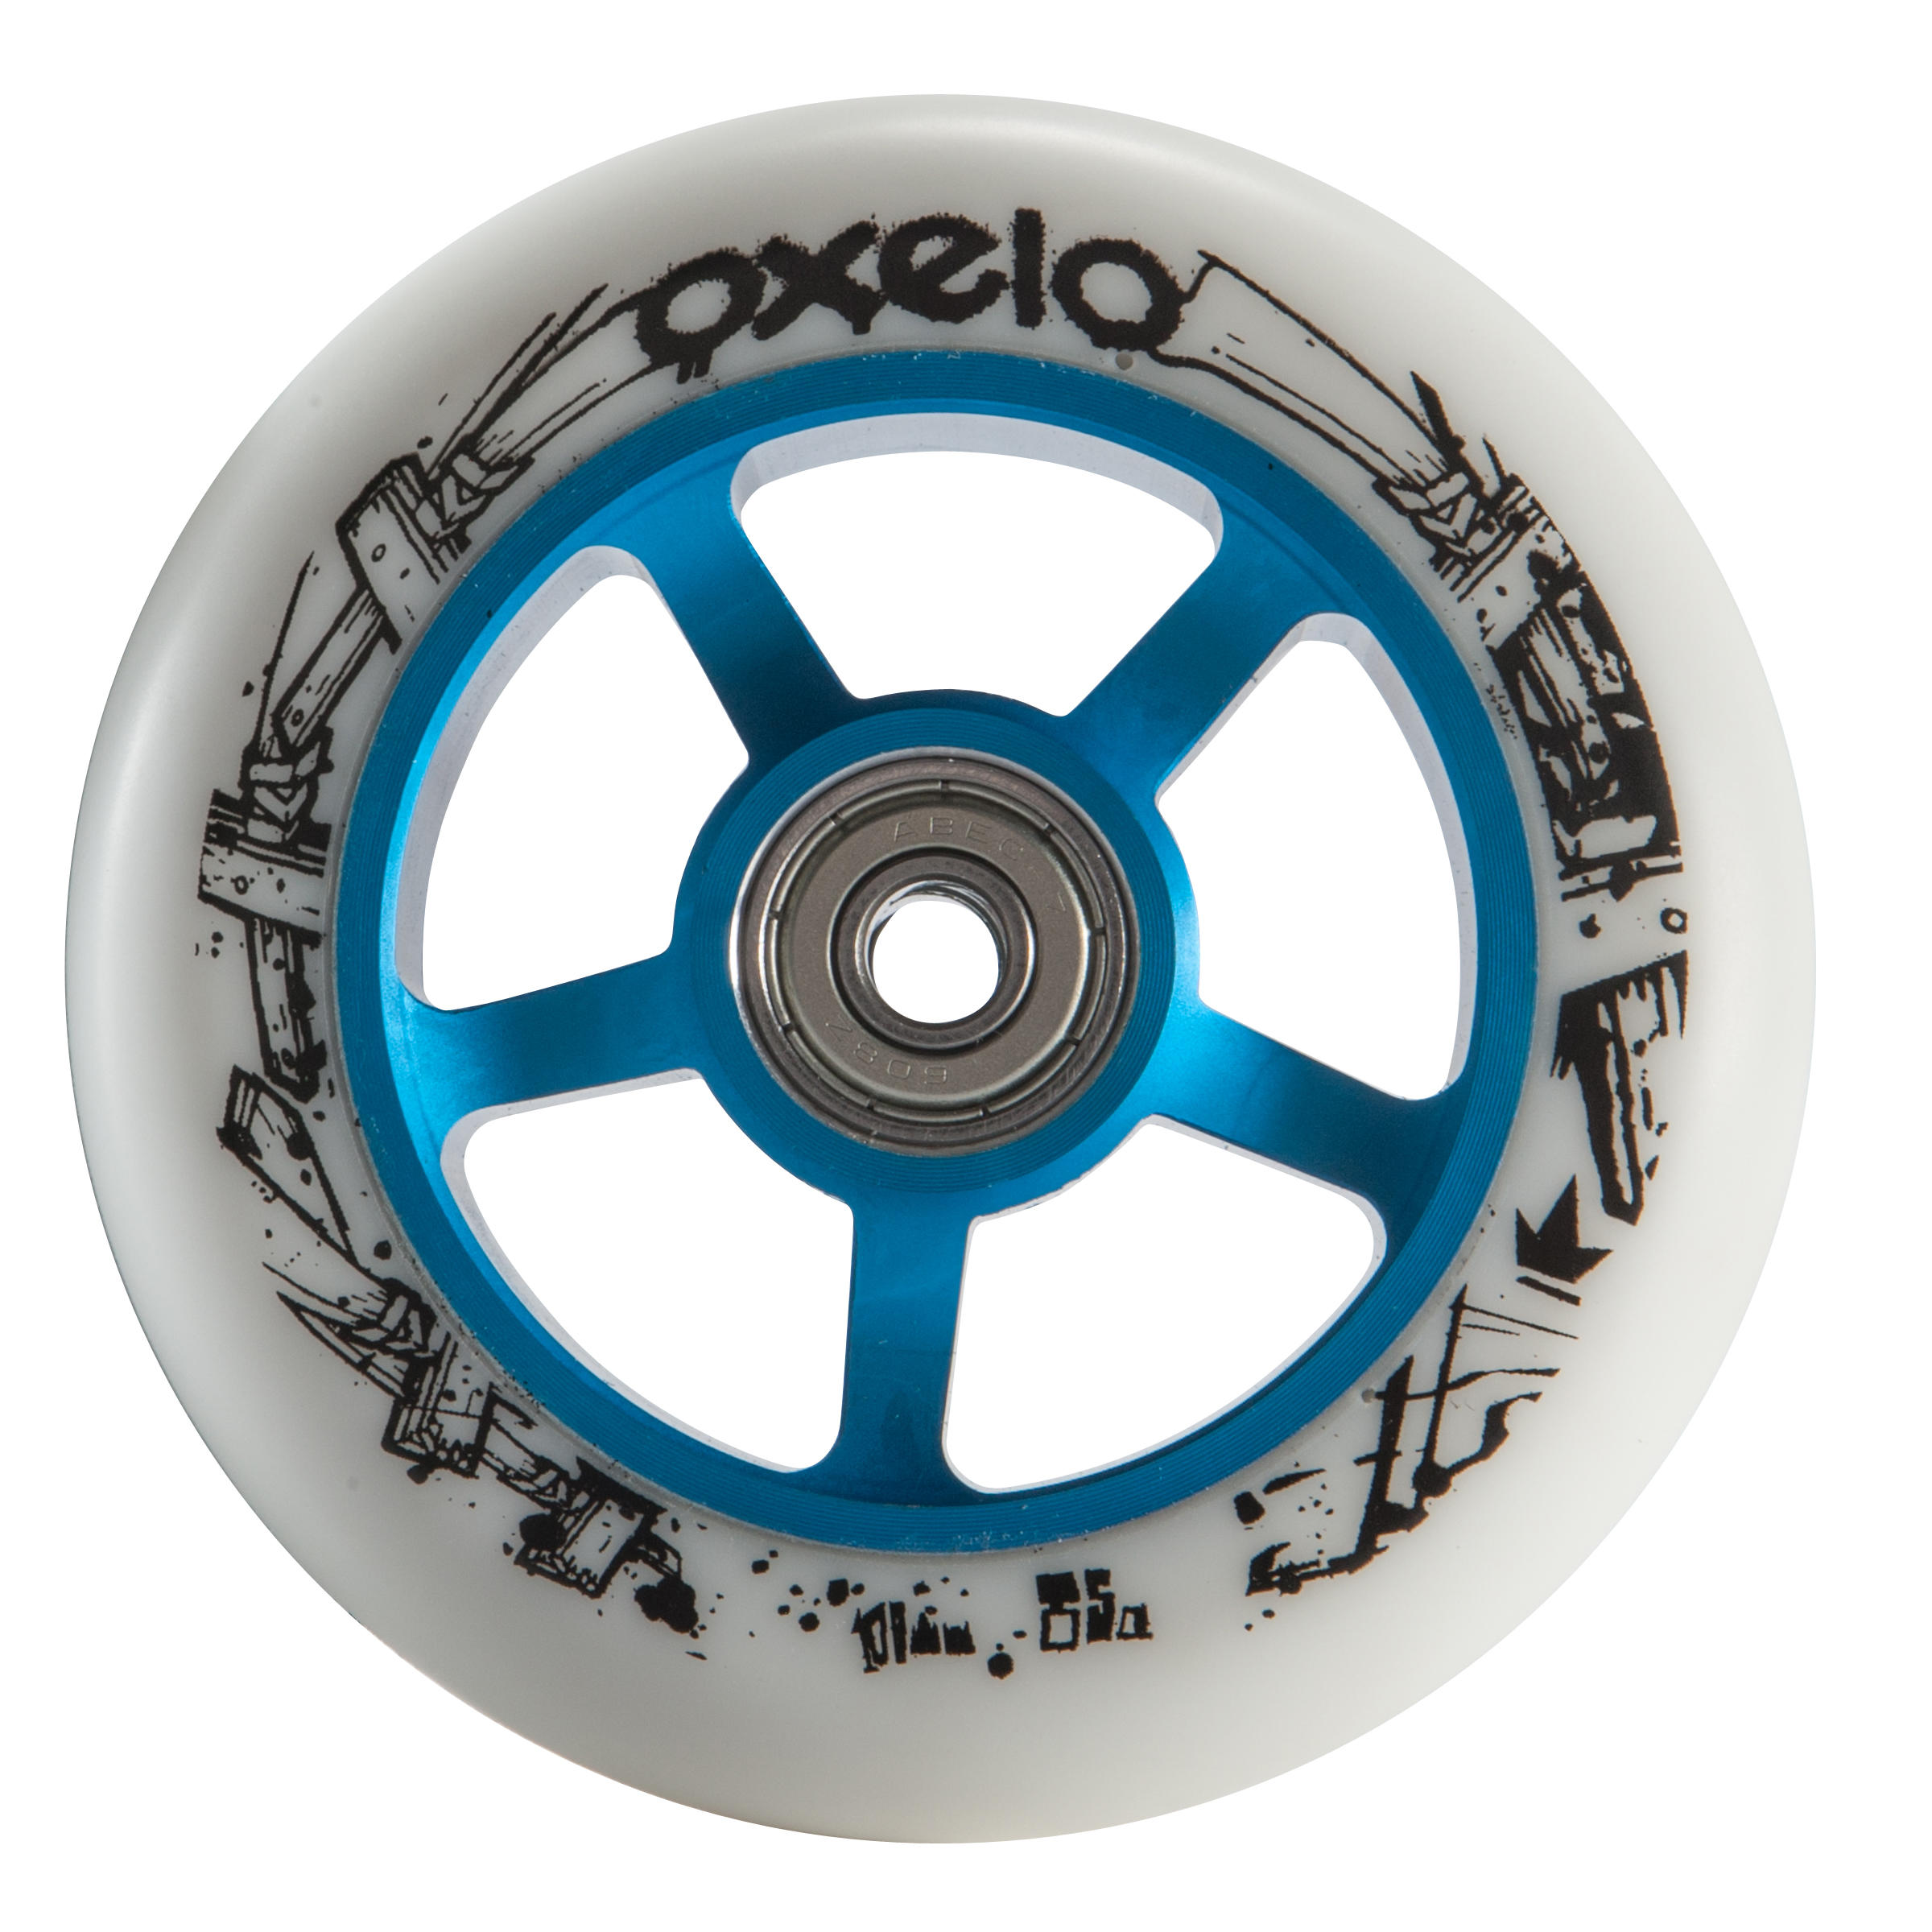 OXELO Scooter-Rolle Freestyle Alu-Core PU 100 mm blau/weiss EINHEITSGRÖSSE